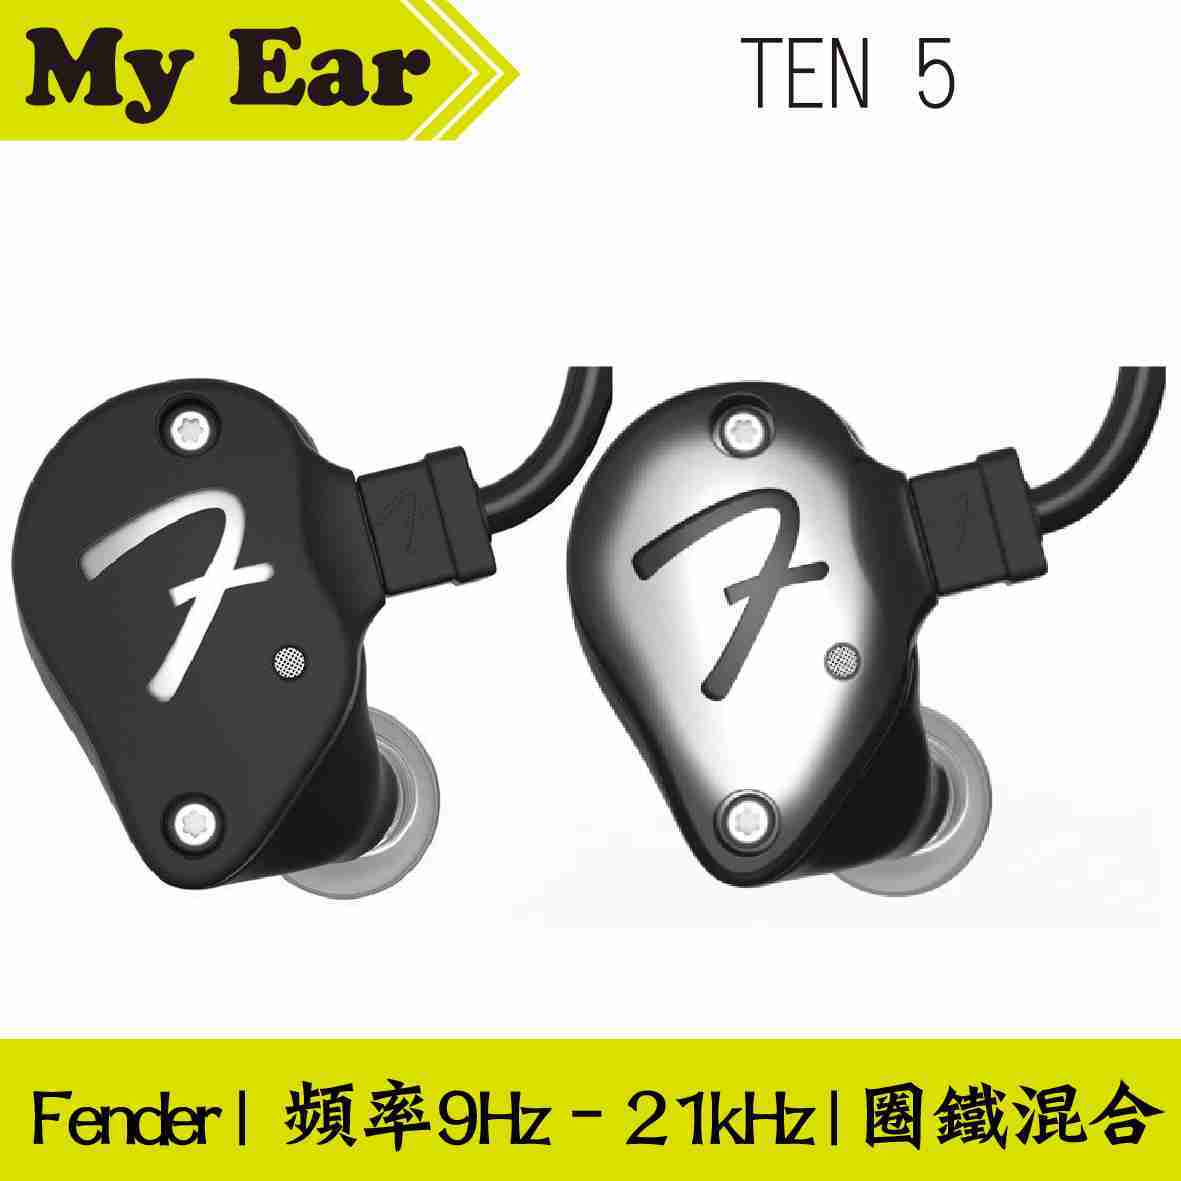 Fender TEN 5 兩色可選 耳道式 耳機 圈鐵混合 | My Ear耳機專門店